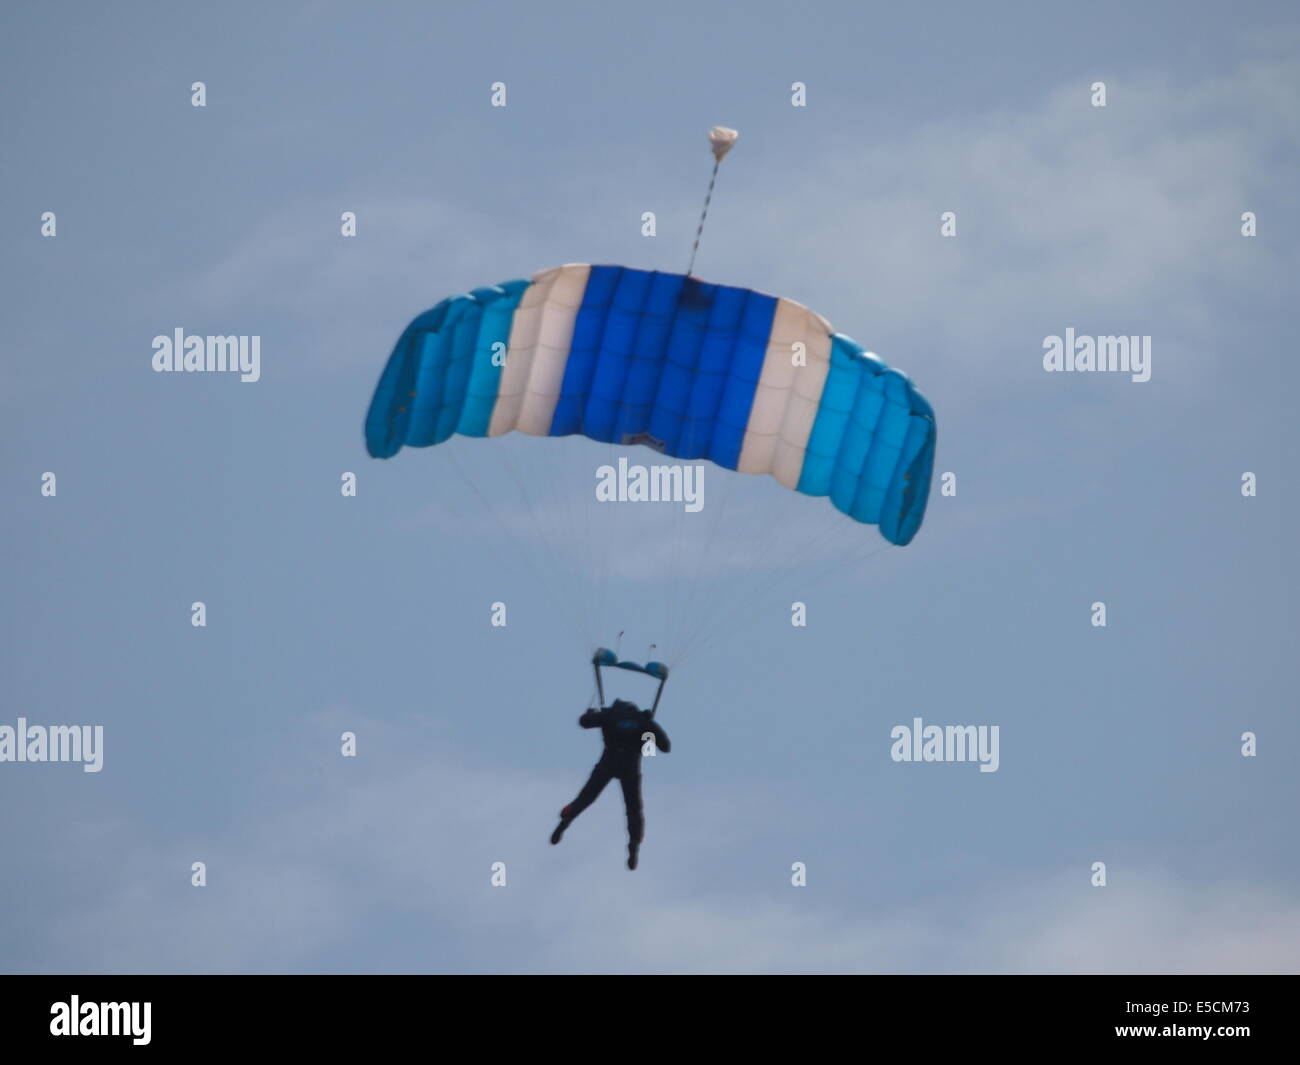 Fallschirm mit blauen Baldachin auf einem blauen Himmel mit ein paar weiße Wolken, pilot erscheint in der silhouette Stockfoto